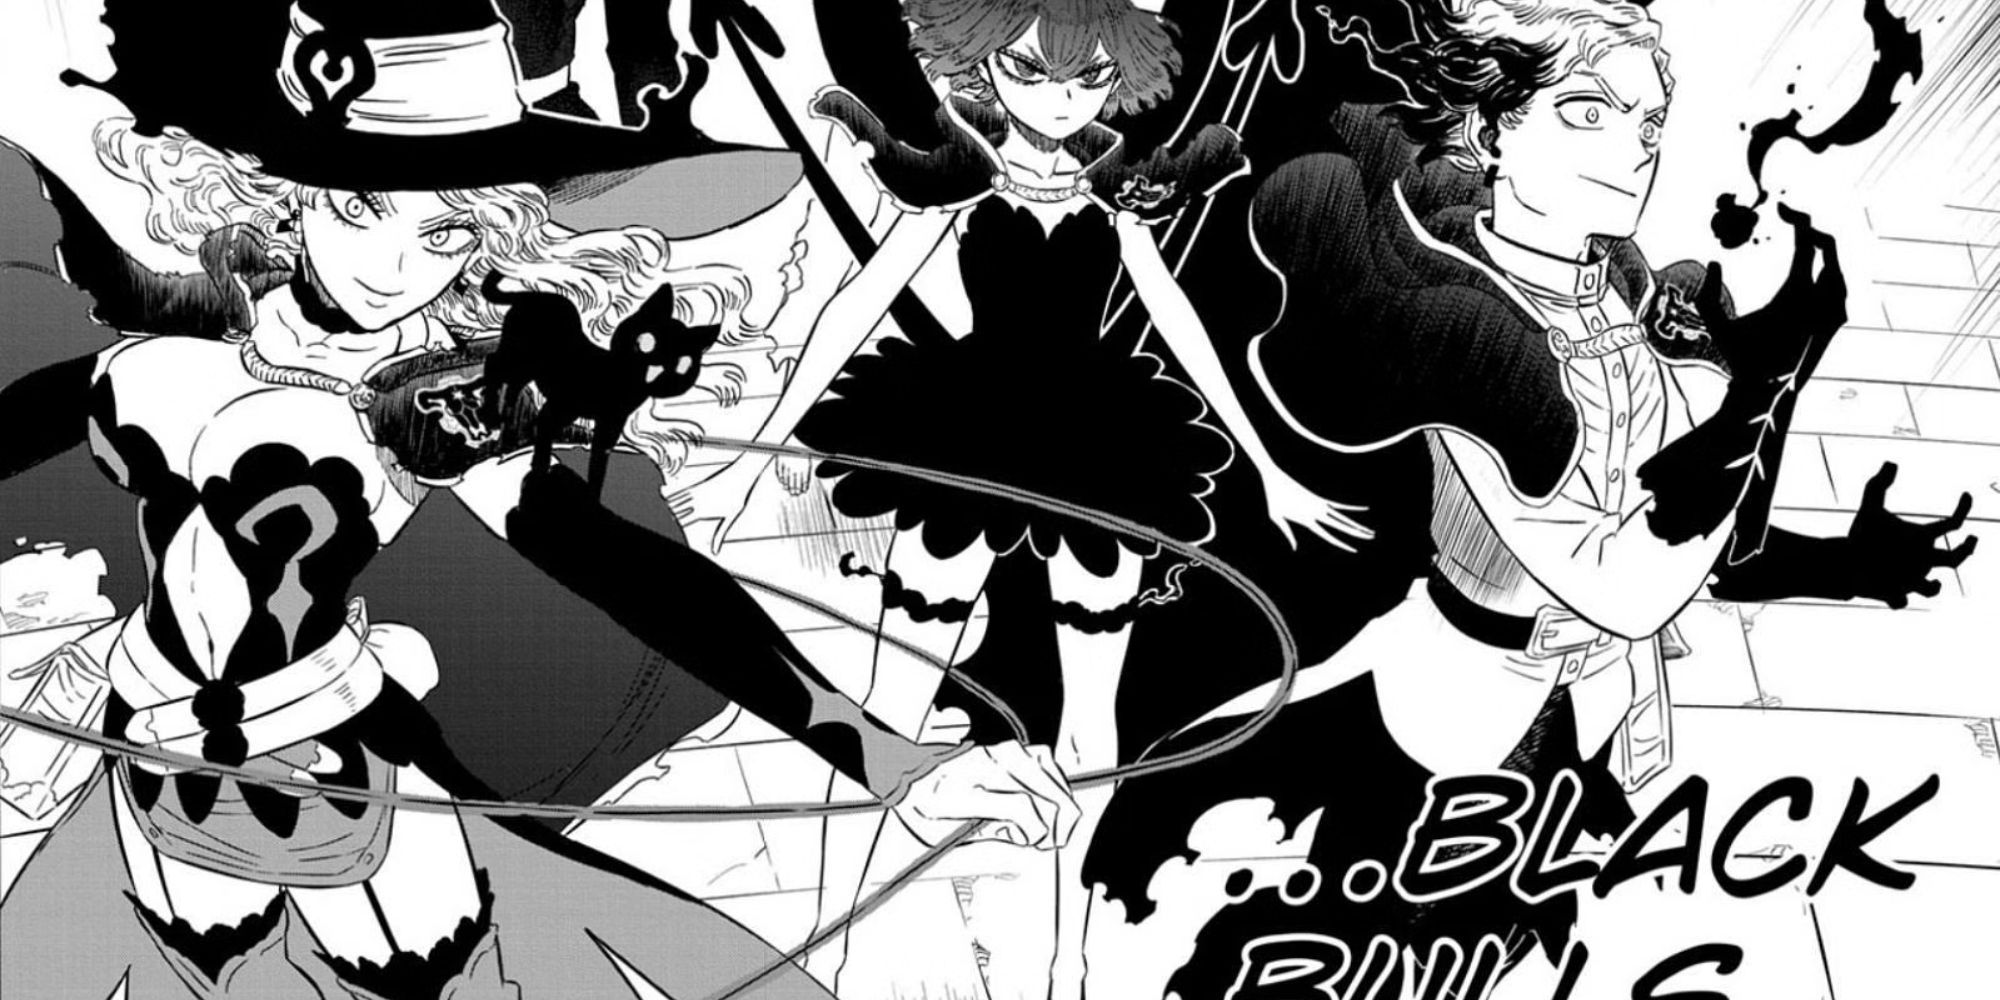 Black Clover Chapter 368 - Black Clover Manga Online